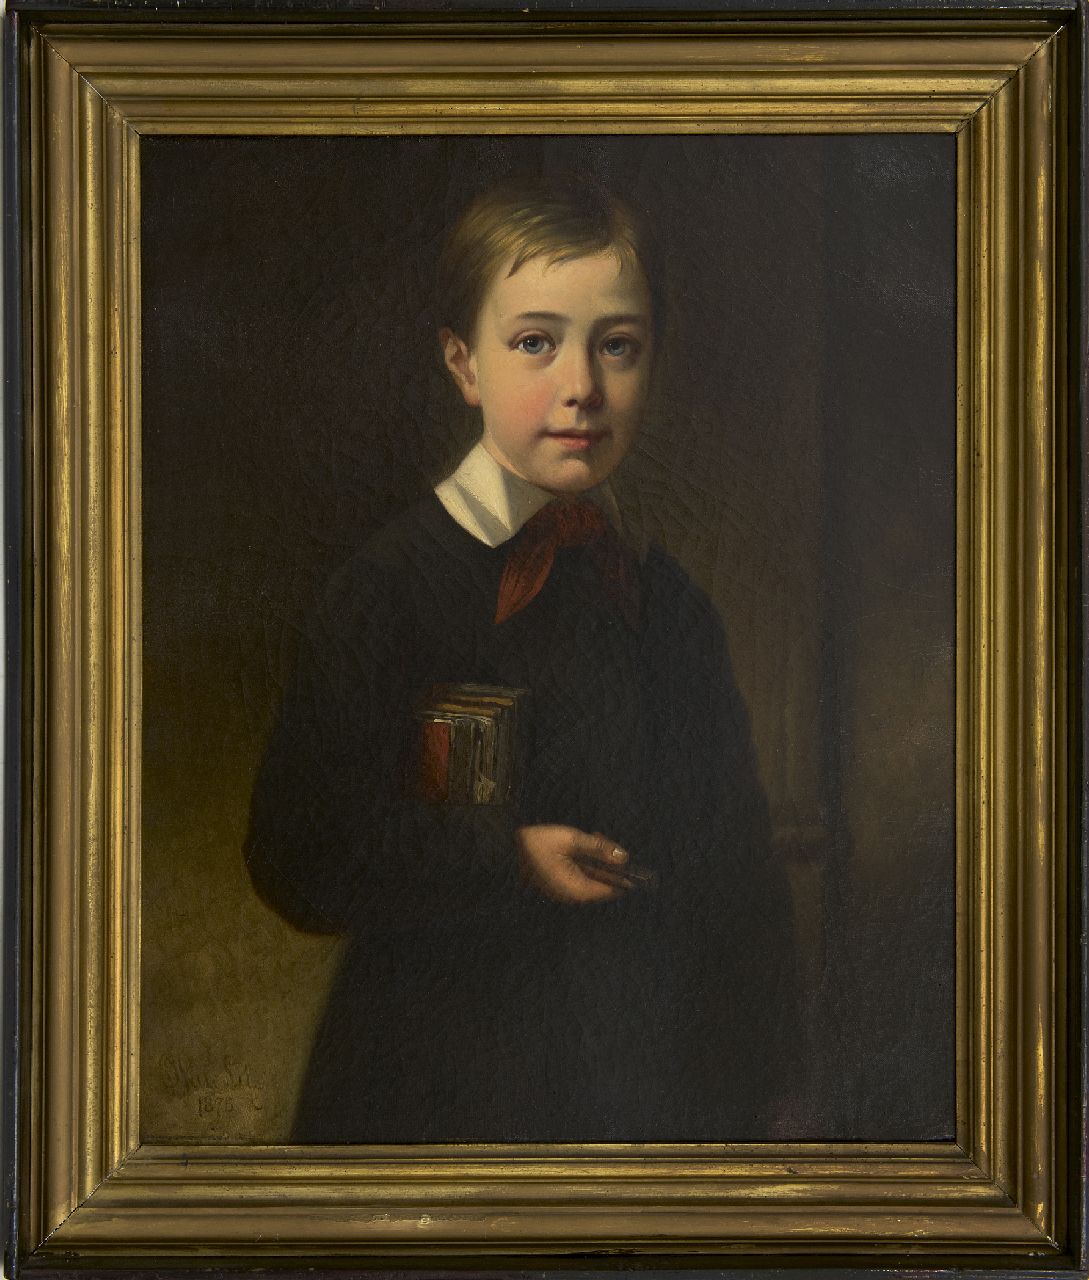 Lil J. van | Joseph van Lil | Schilderijen te koop aangeboden | Portret van Georges, zoon van de kunstenaar, olieverf op doek 63,3 x 51,5 cm, gesigneerd linksonder en gedateerd 1875